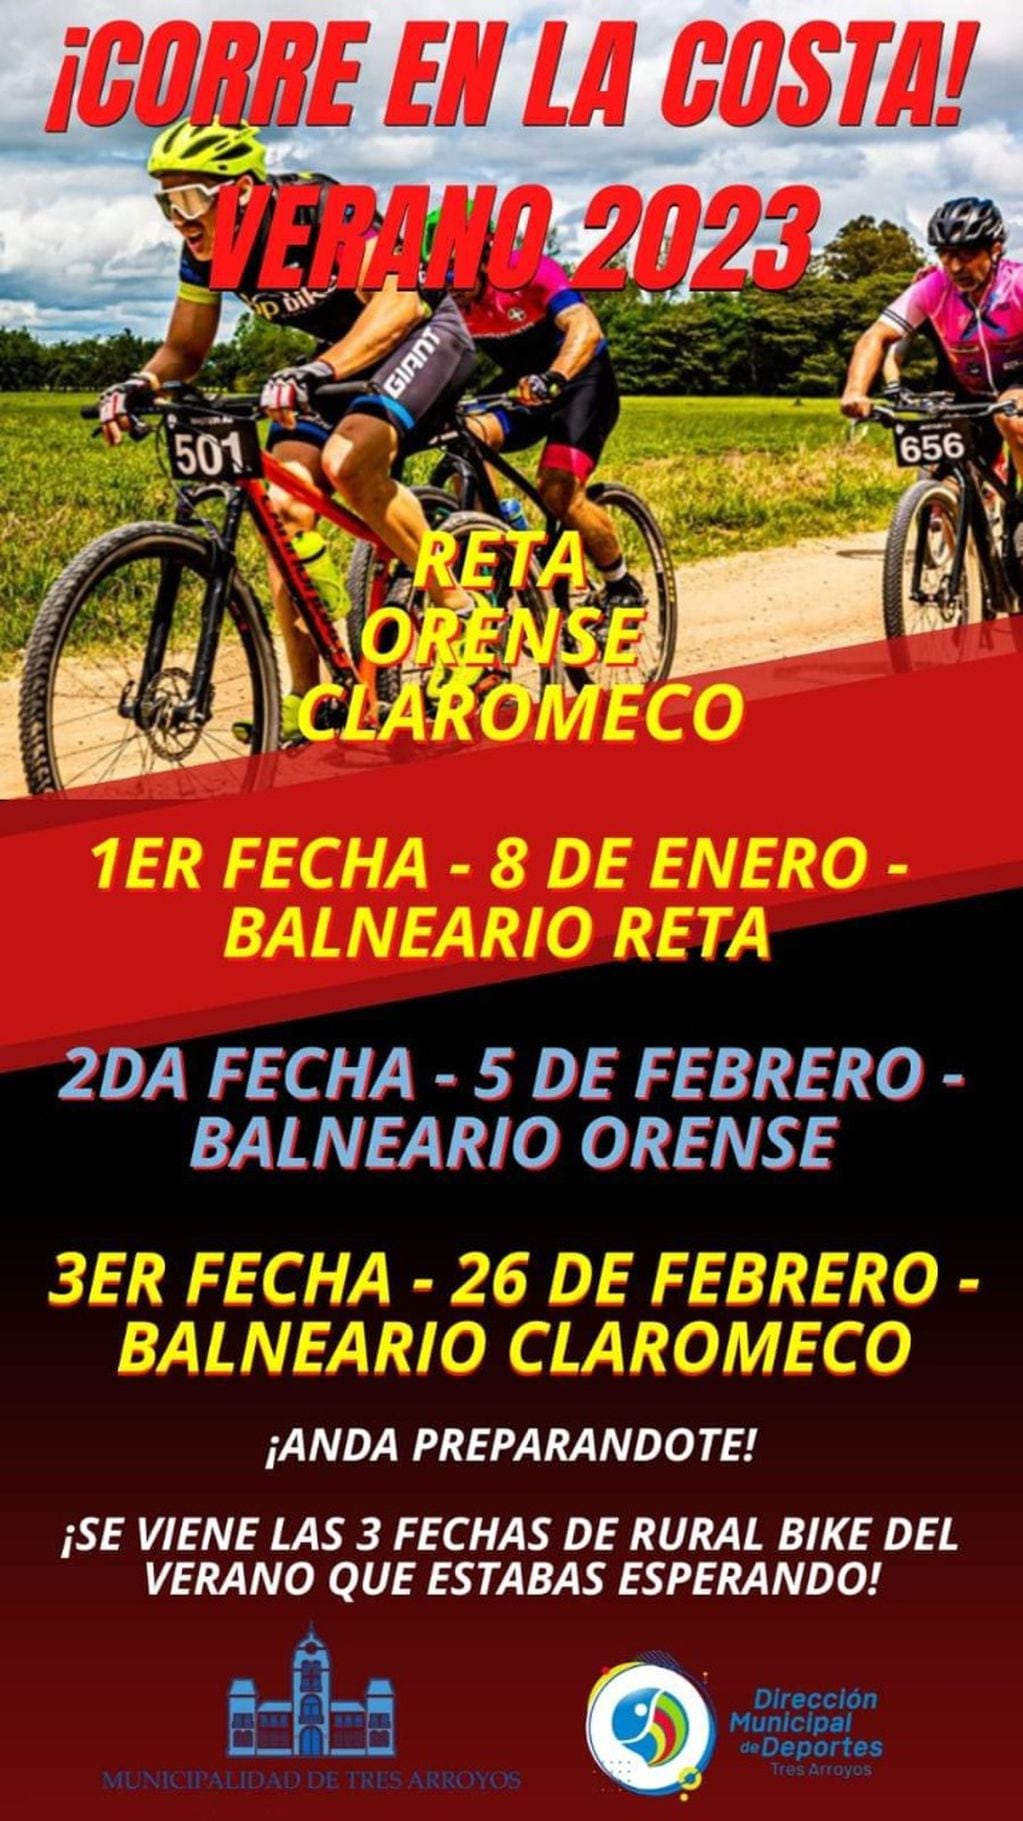 Continúa abierta la inscripción para la 1er fecha del Rural Bike Costero 2023 en Reta